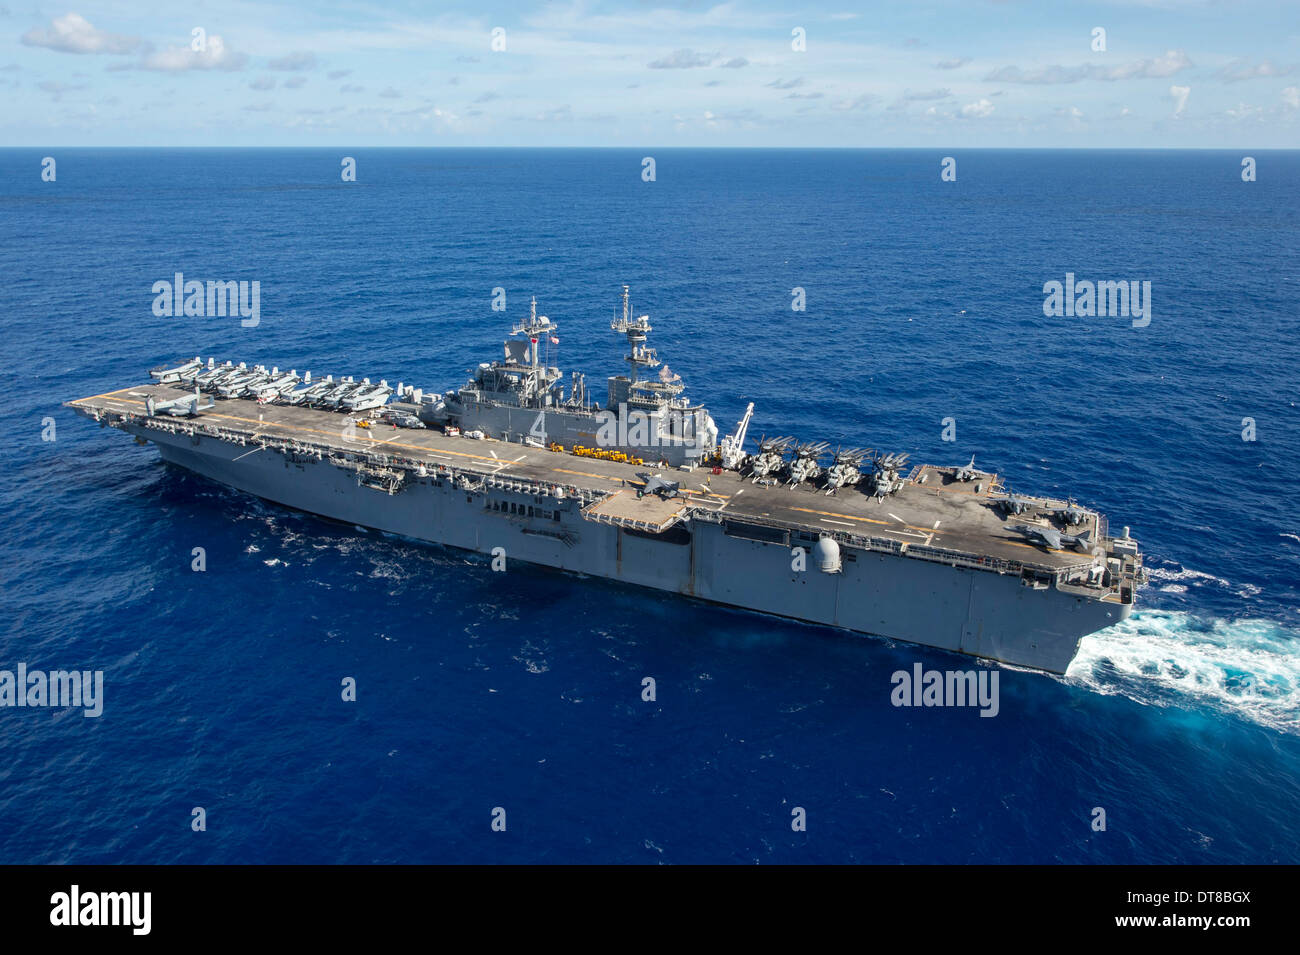 Pazifik, 5. September 2013 - Transite der amphibischen Angriff Schiff USS Boxer (LHD-4) des Pazifischen Ozeans. Stockfoto